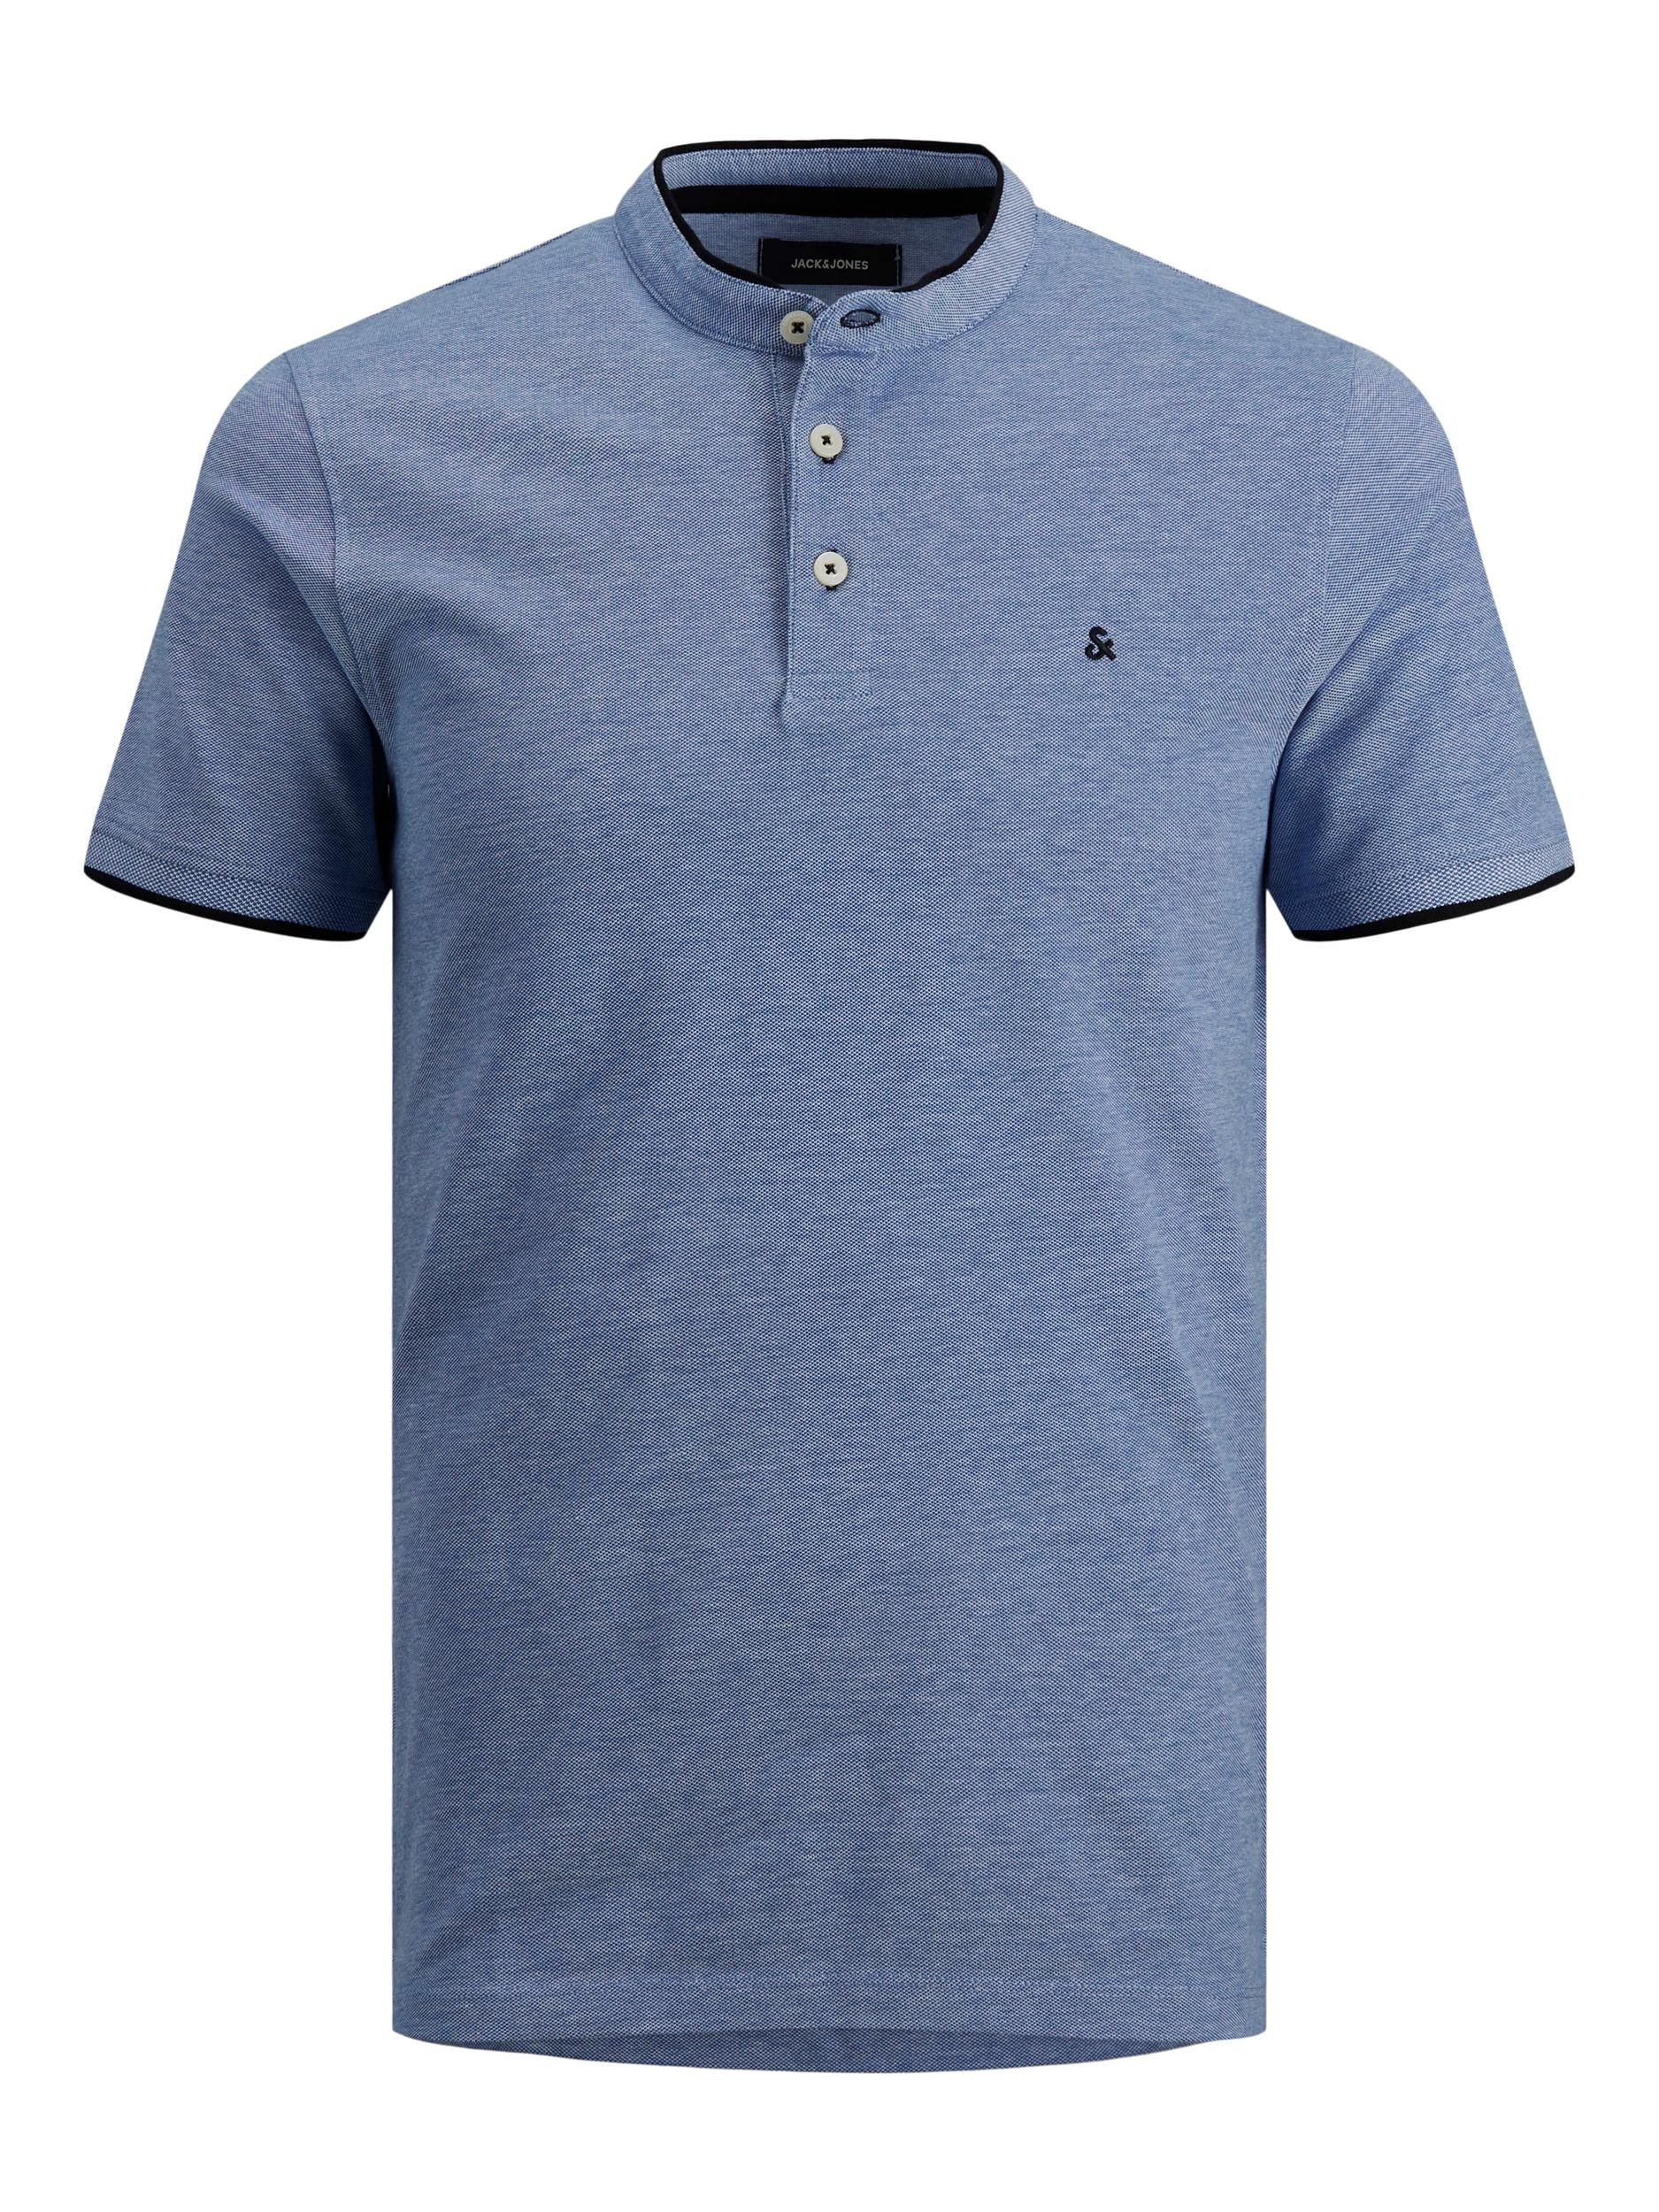 JACK & JONES Herren Polo T-Shirt Pique Hemd Kurzarm Basic Oberteil Cotton Logostickerei JJEPAULOS, Farben:Blau, Größe:S